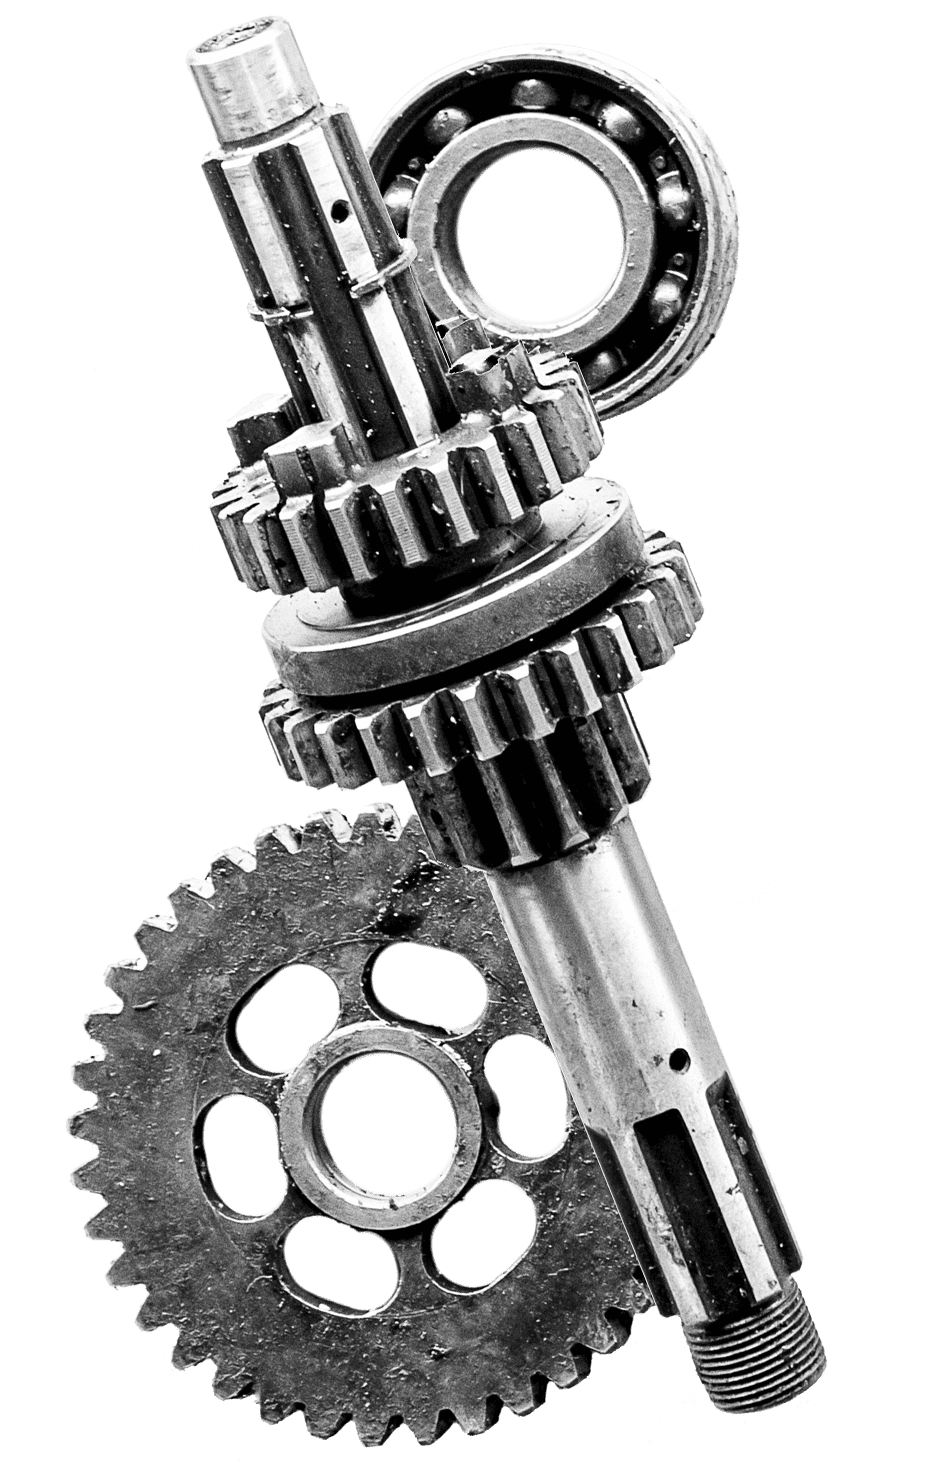 Gears and ball bearings